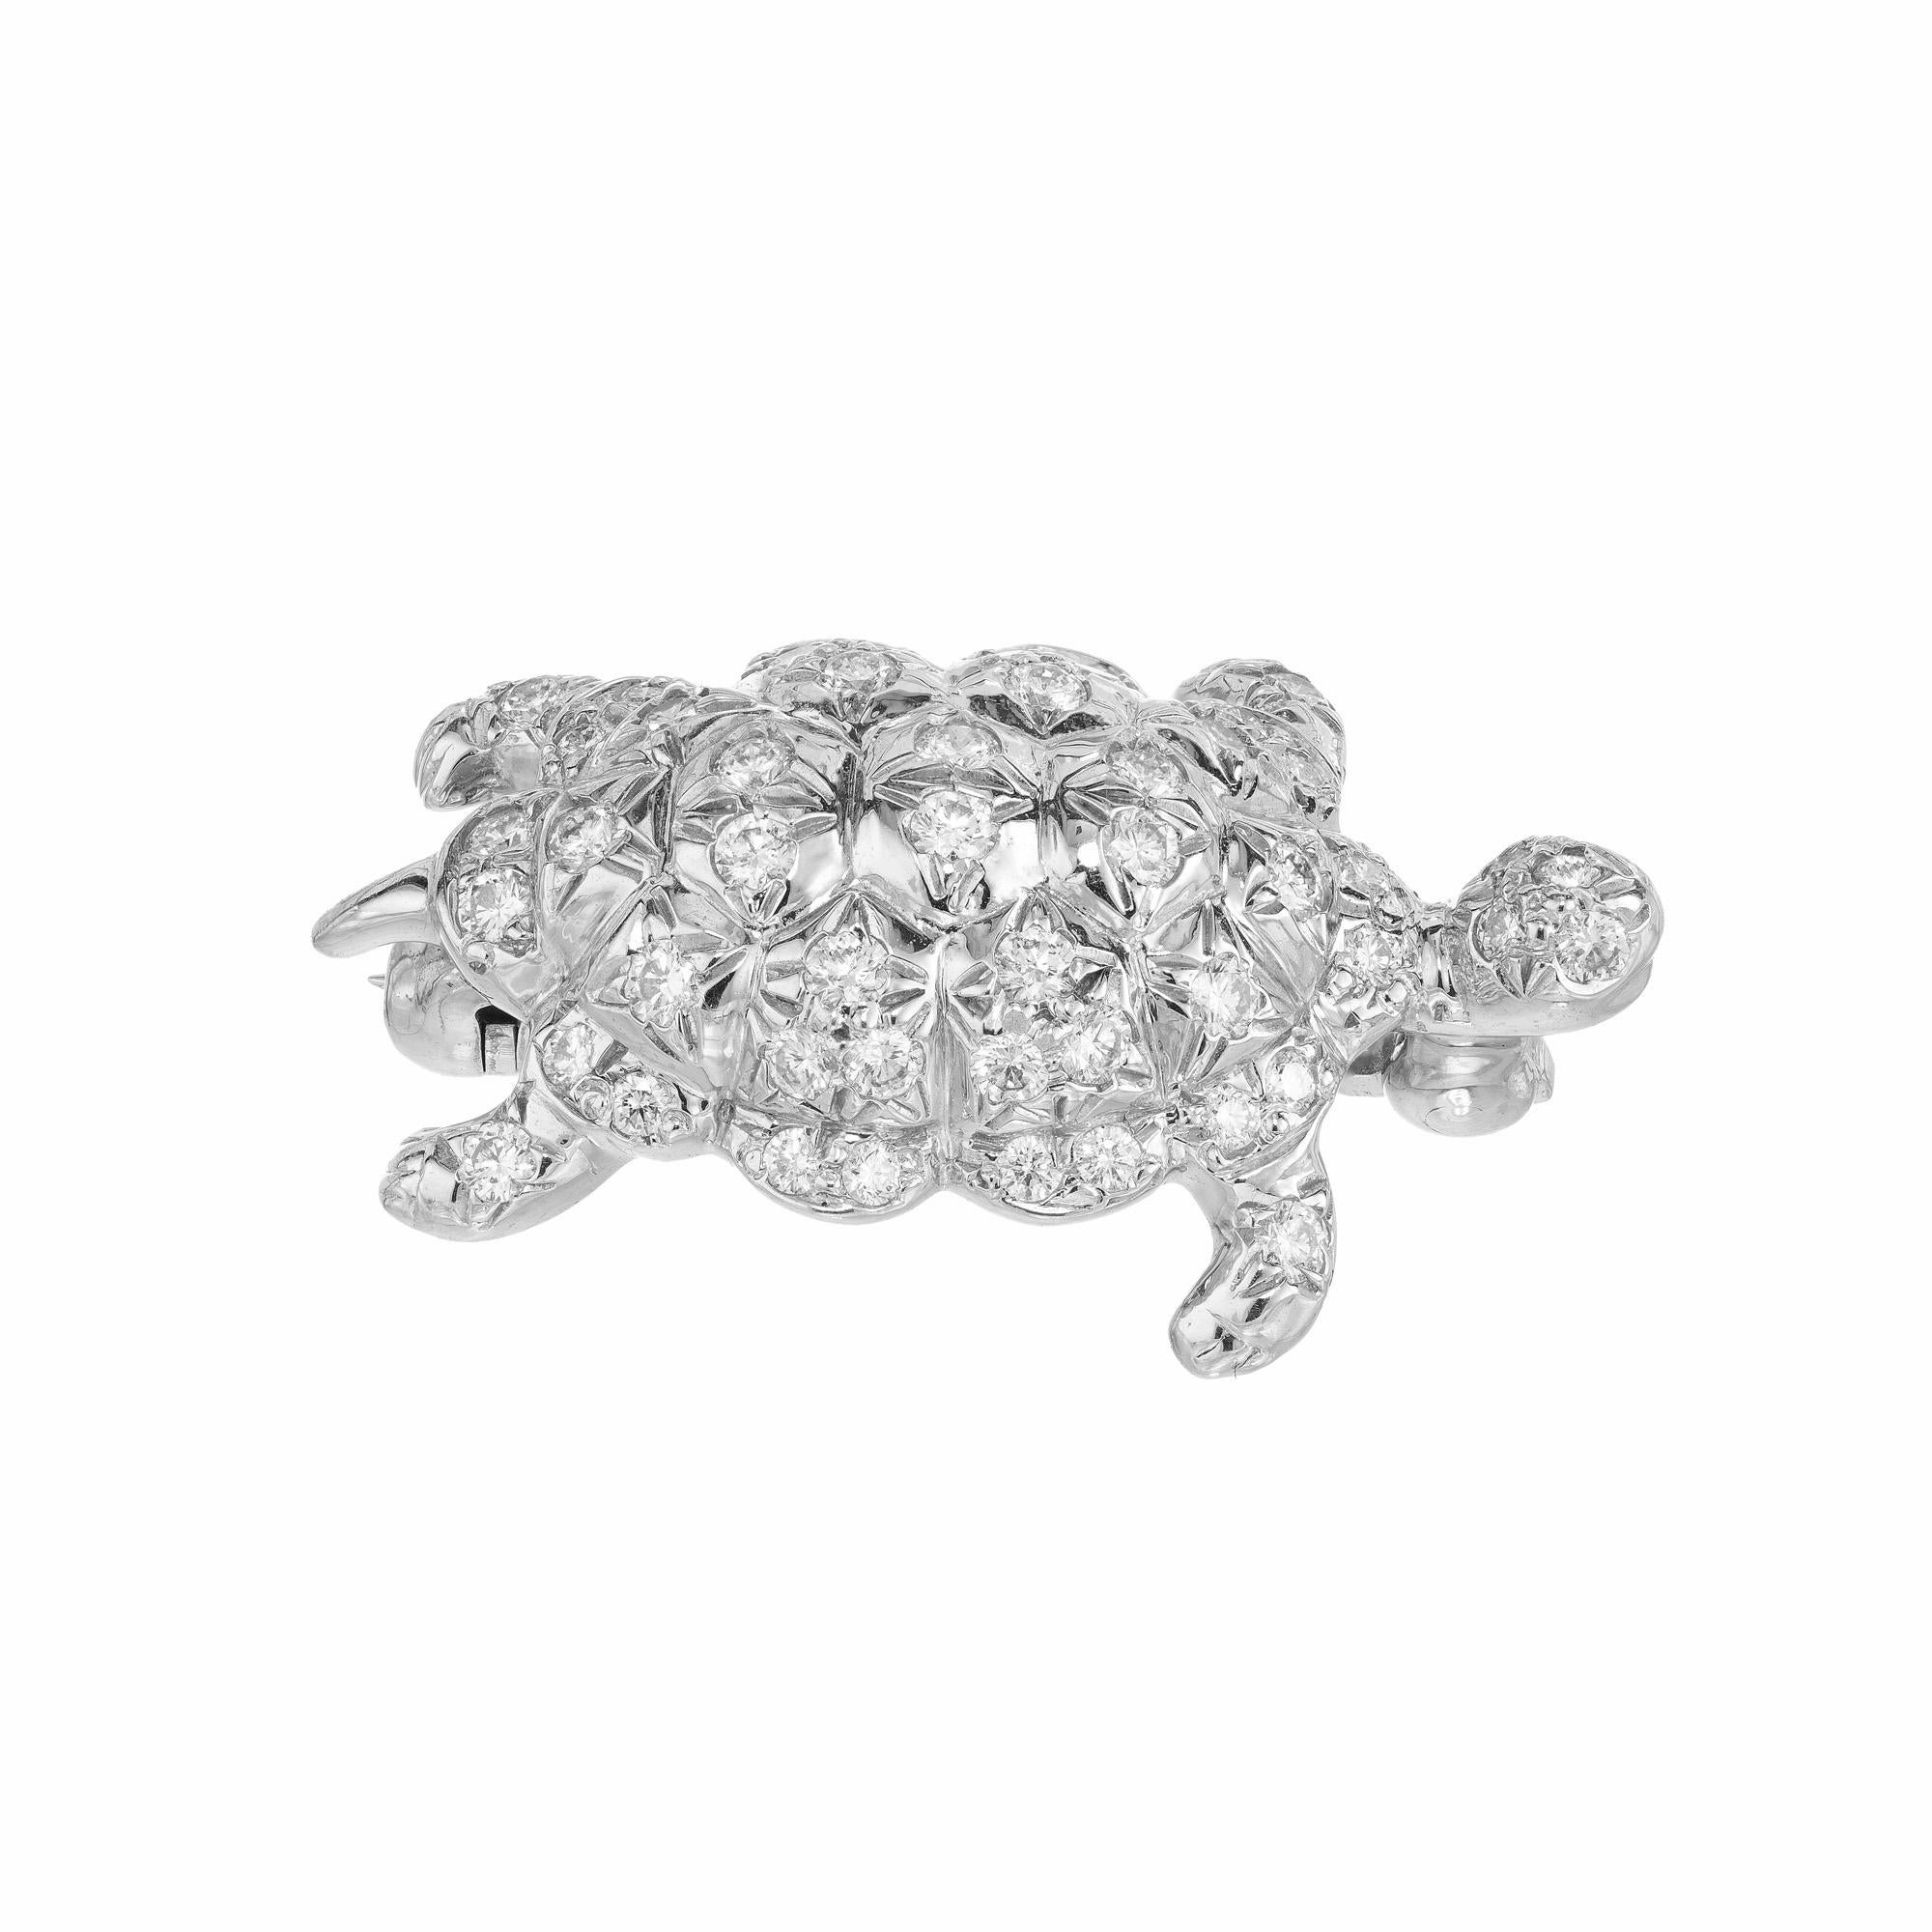 Eine exquisite .50 Karat Tiffany & Co Platin-Diamant-Schildkröten-Brosche, die auch als Anhänger verwendet werden kann. Es handelt sich um ein sehr gut verarbeitetes, modernes Stück mit 53 runden Brillanten, die eine extrem hohe Qualität aufweisen,